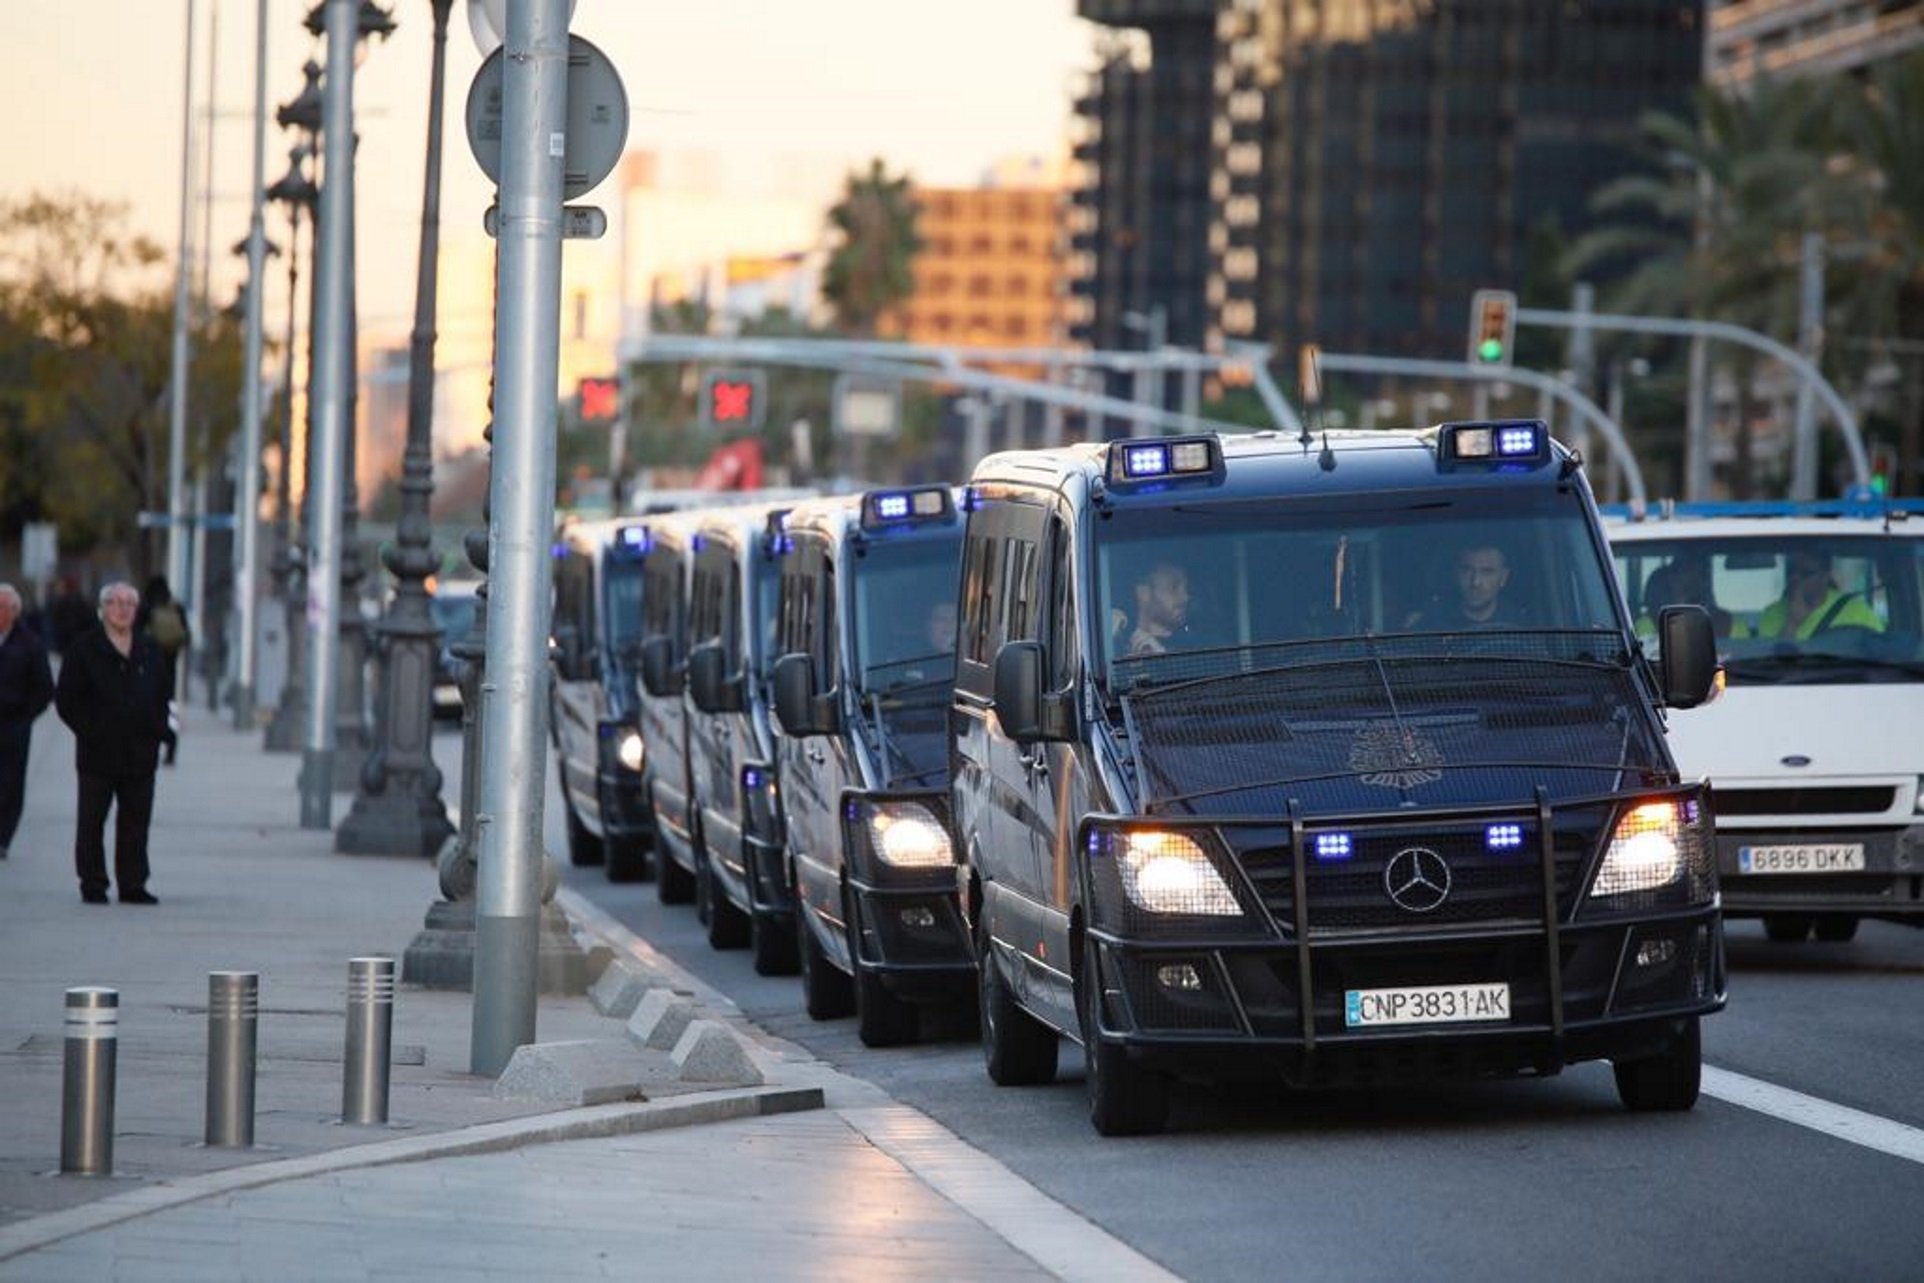 ¿Crees que Francia aceptaría un acuerdo con la policía española para detener a Puigdemont?